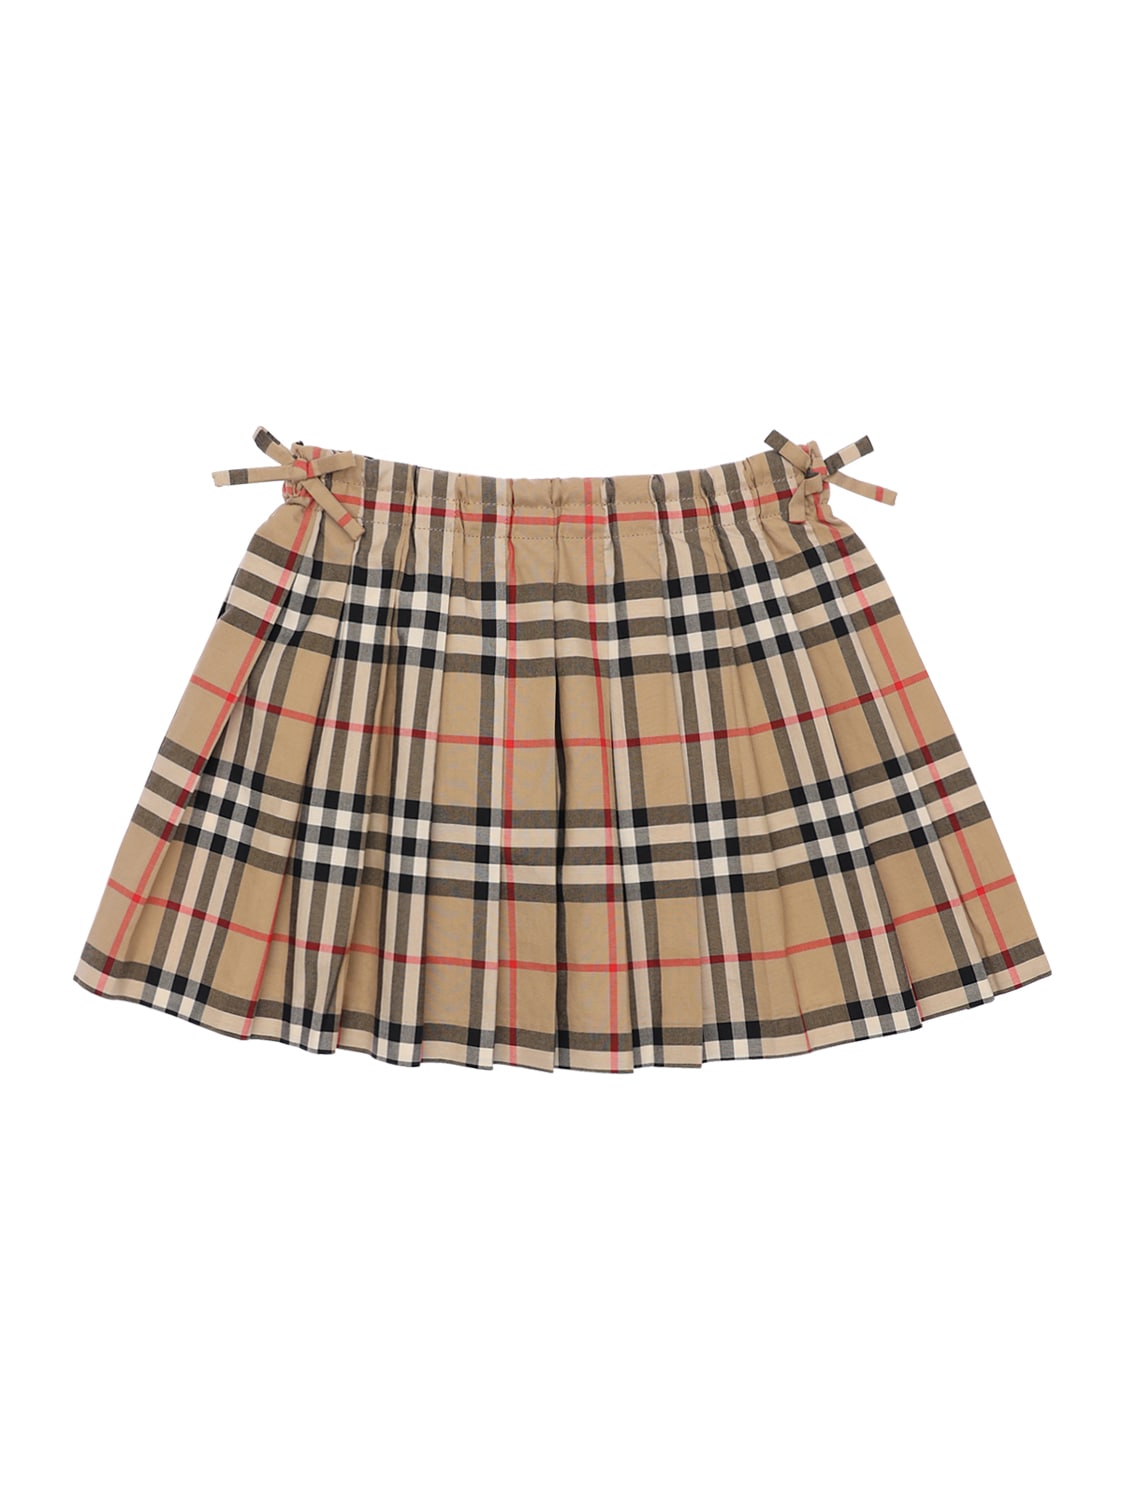 burberry pleated mini skirt